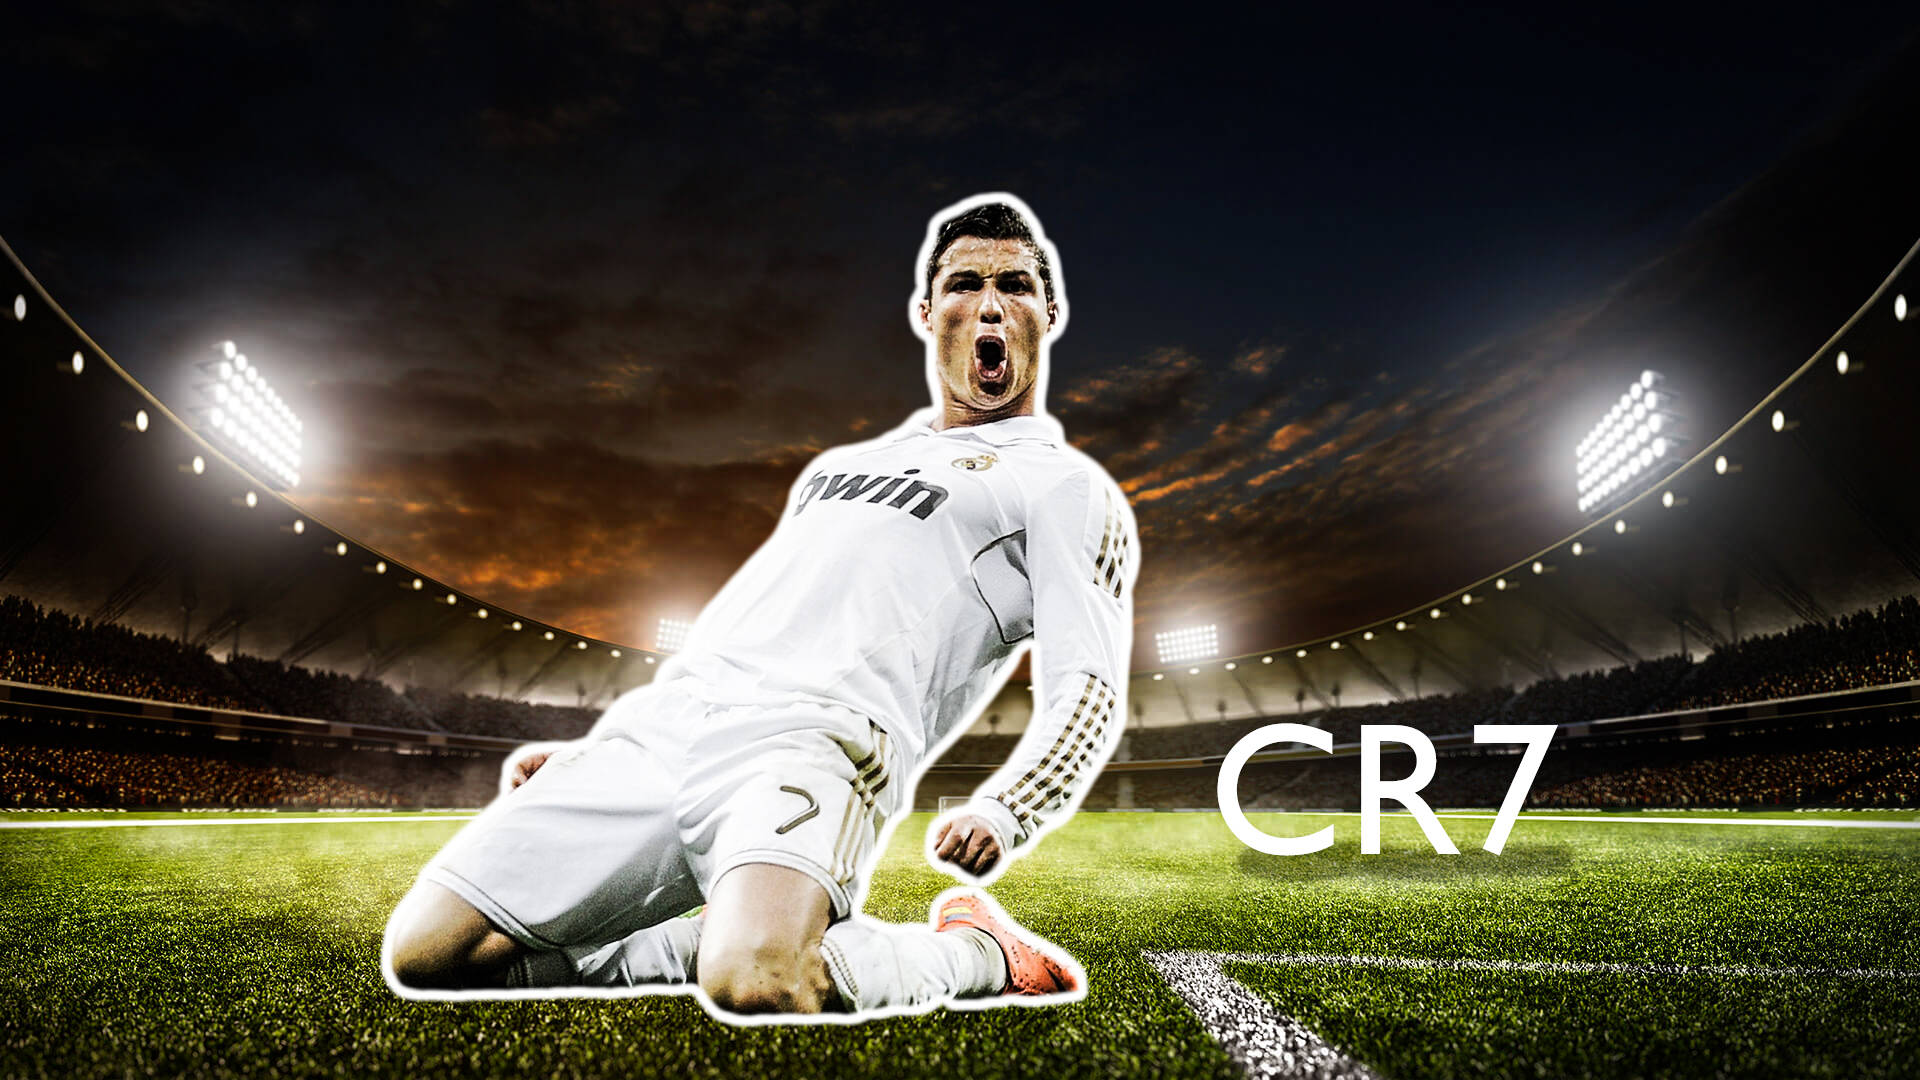 1920X1080 Cristiano Ronaldo Wallpaper and Background